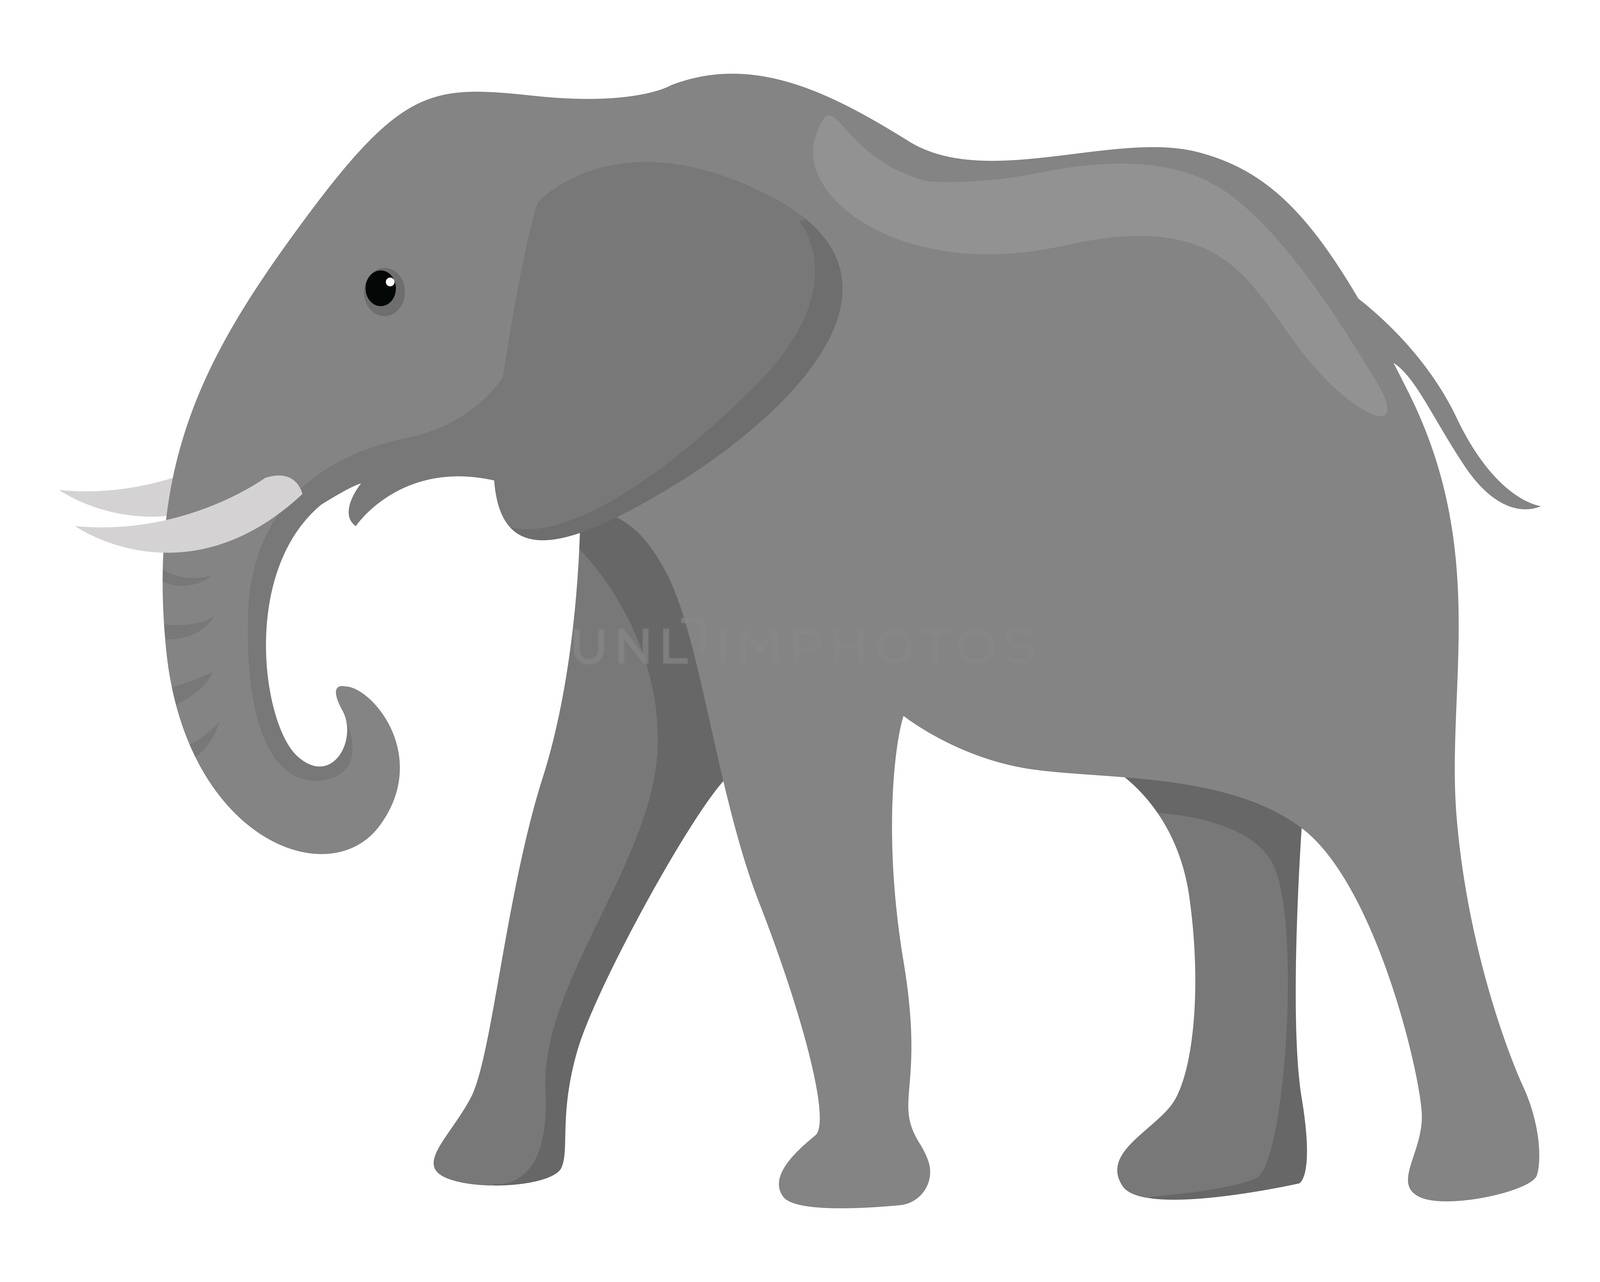 Big elephant , illustration, vector on white background